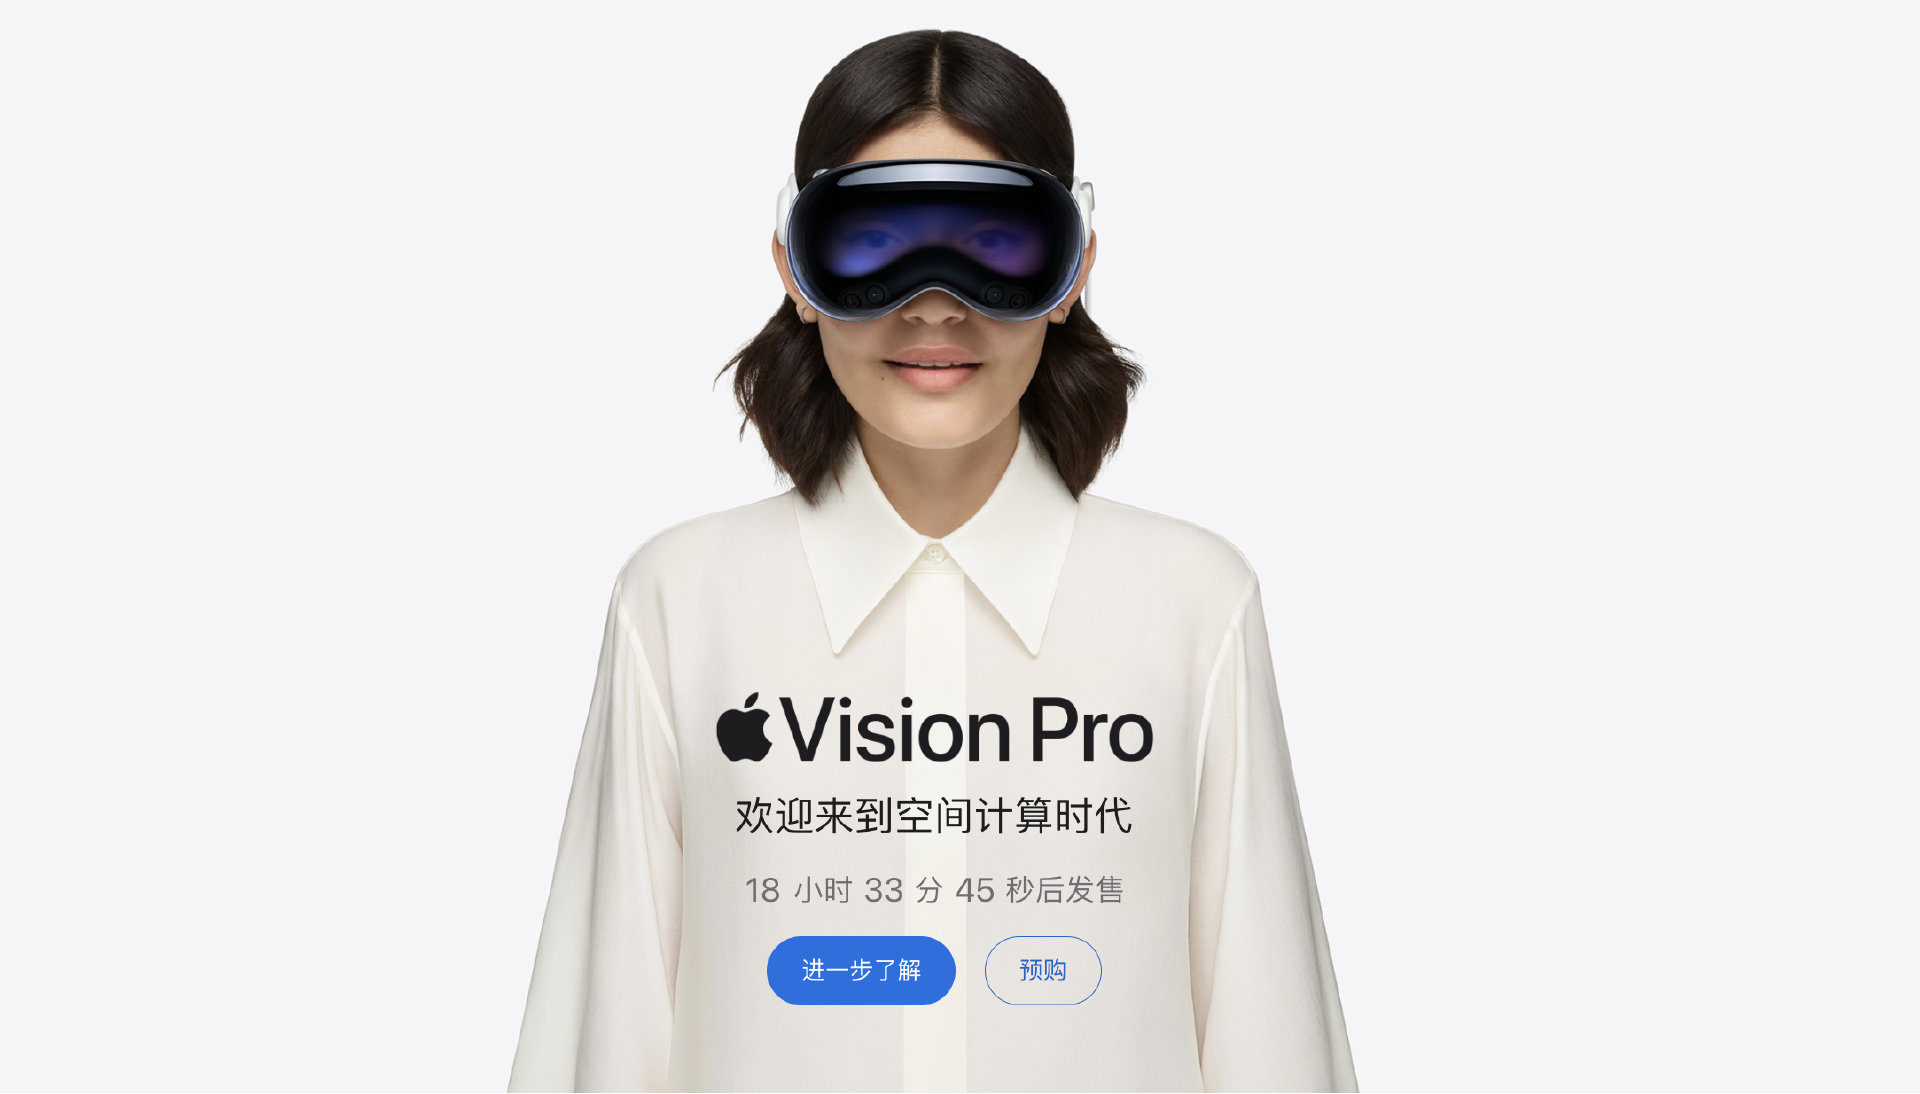 定价近3万的国行版苹果Vision Pro正式开卖，中国为美国本土外首批开卖国家  第4张